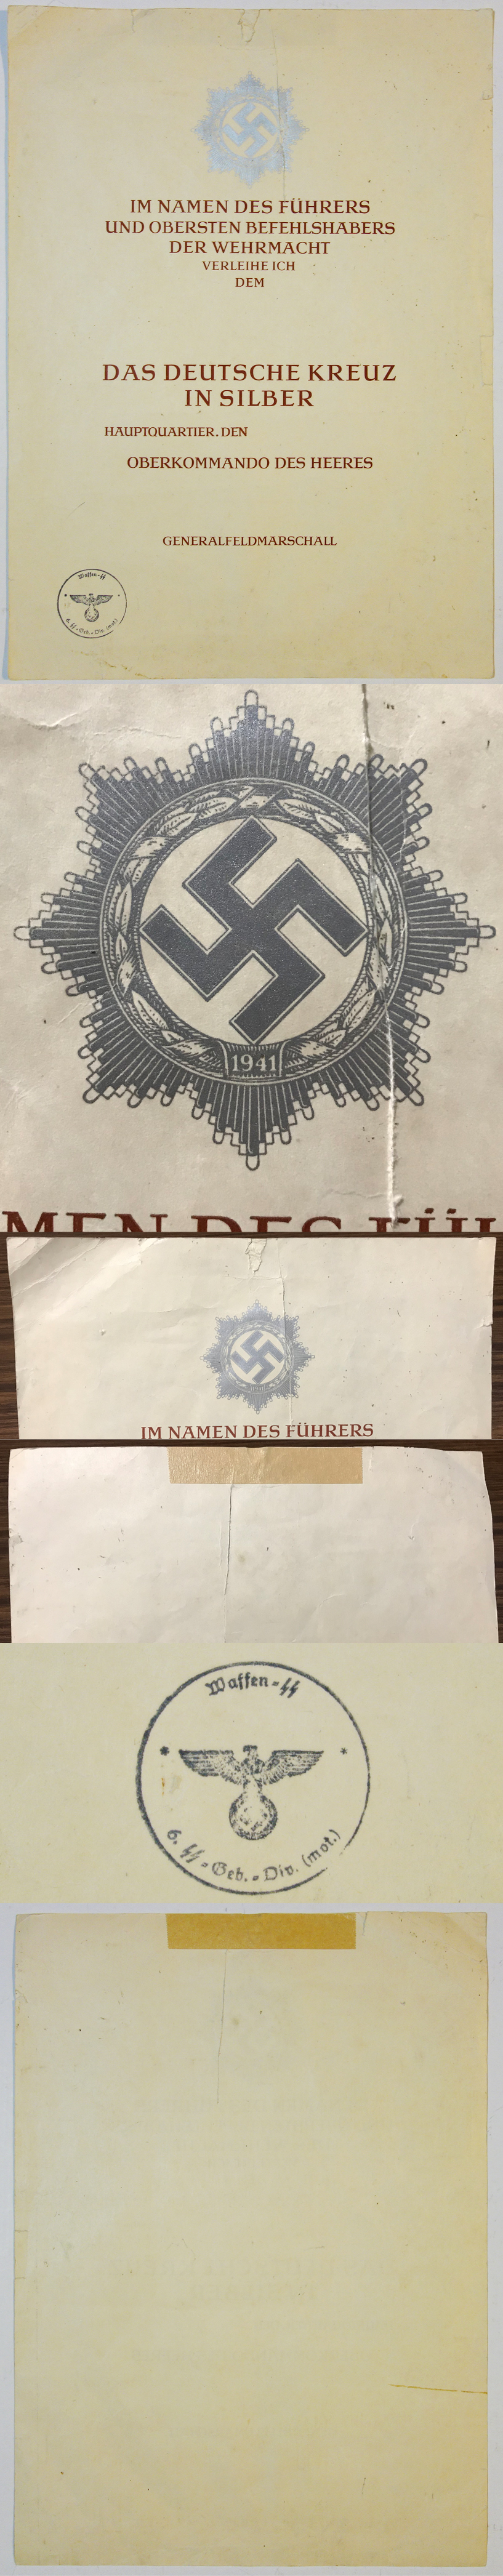 German Cross in Silver Award Document